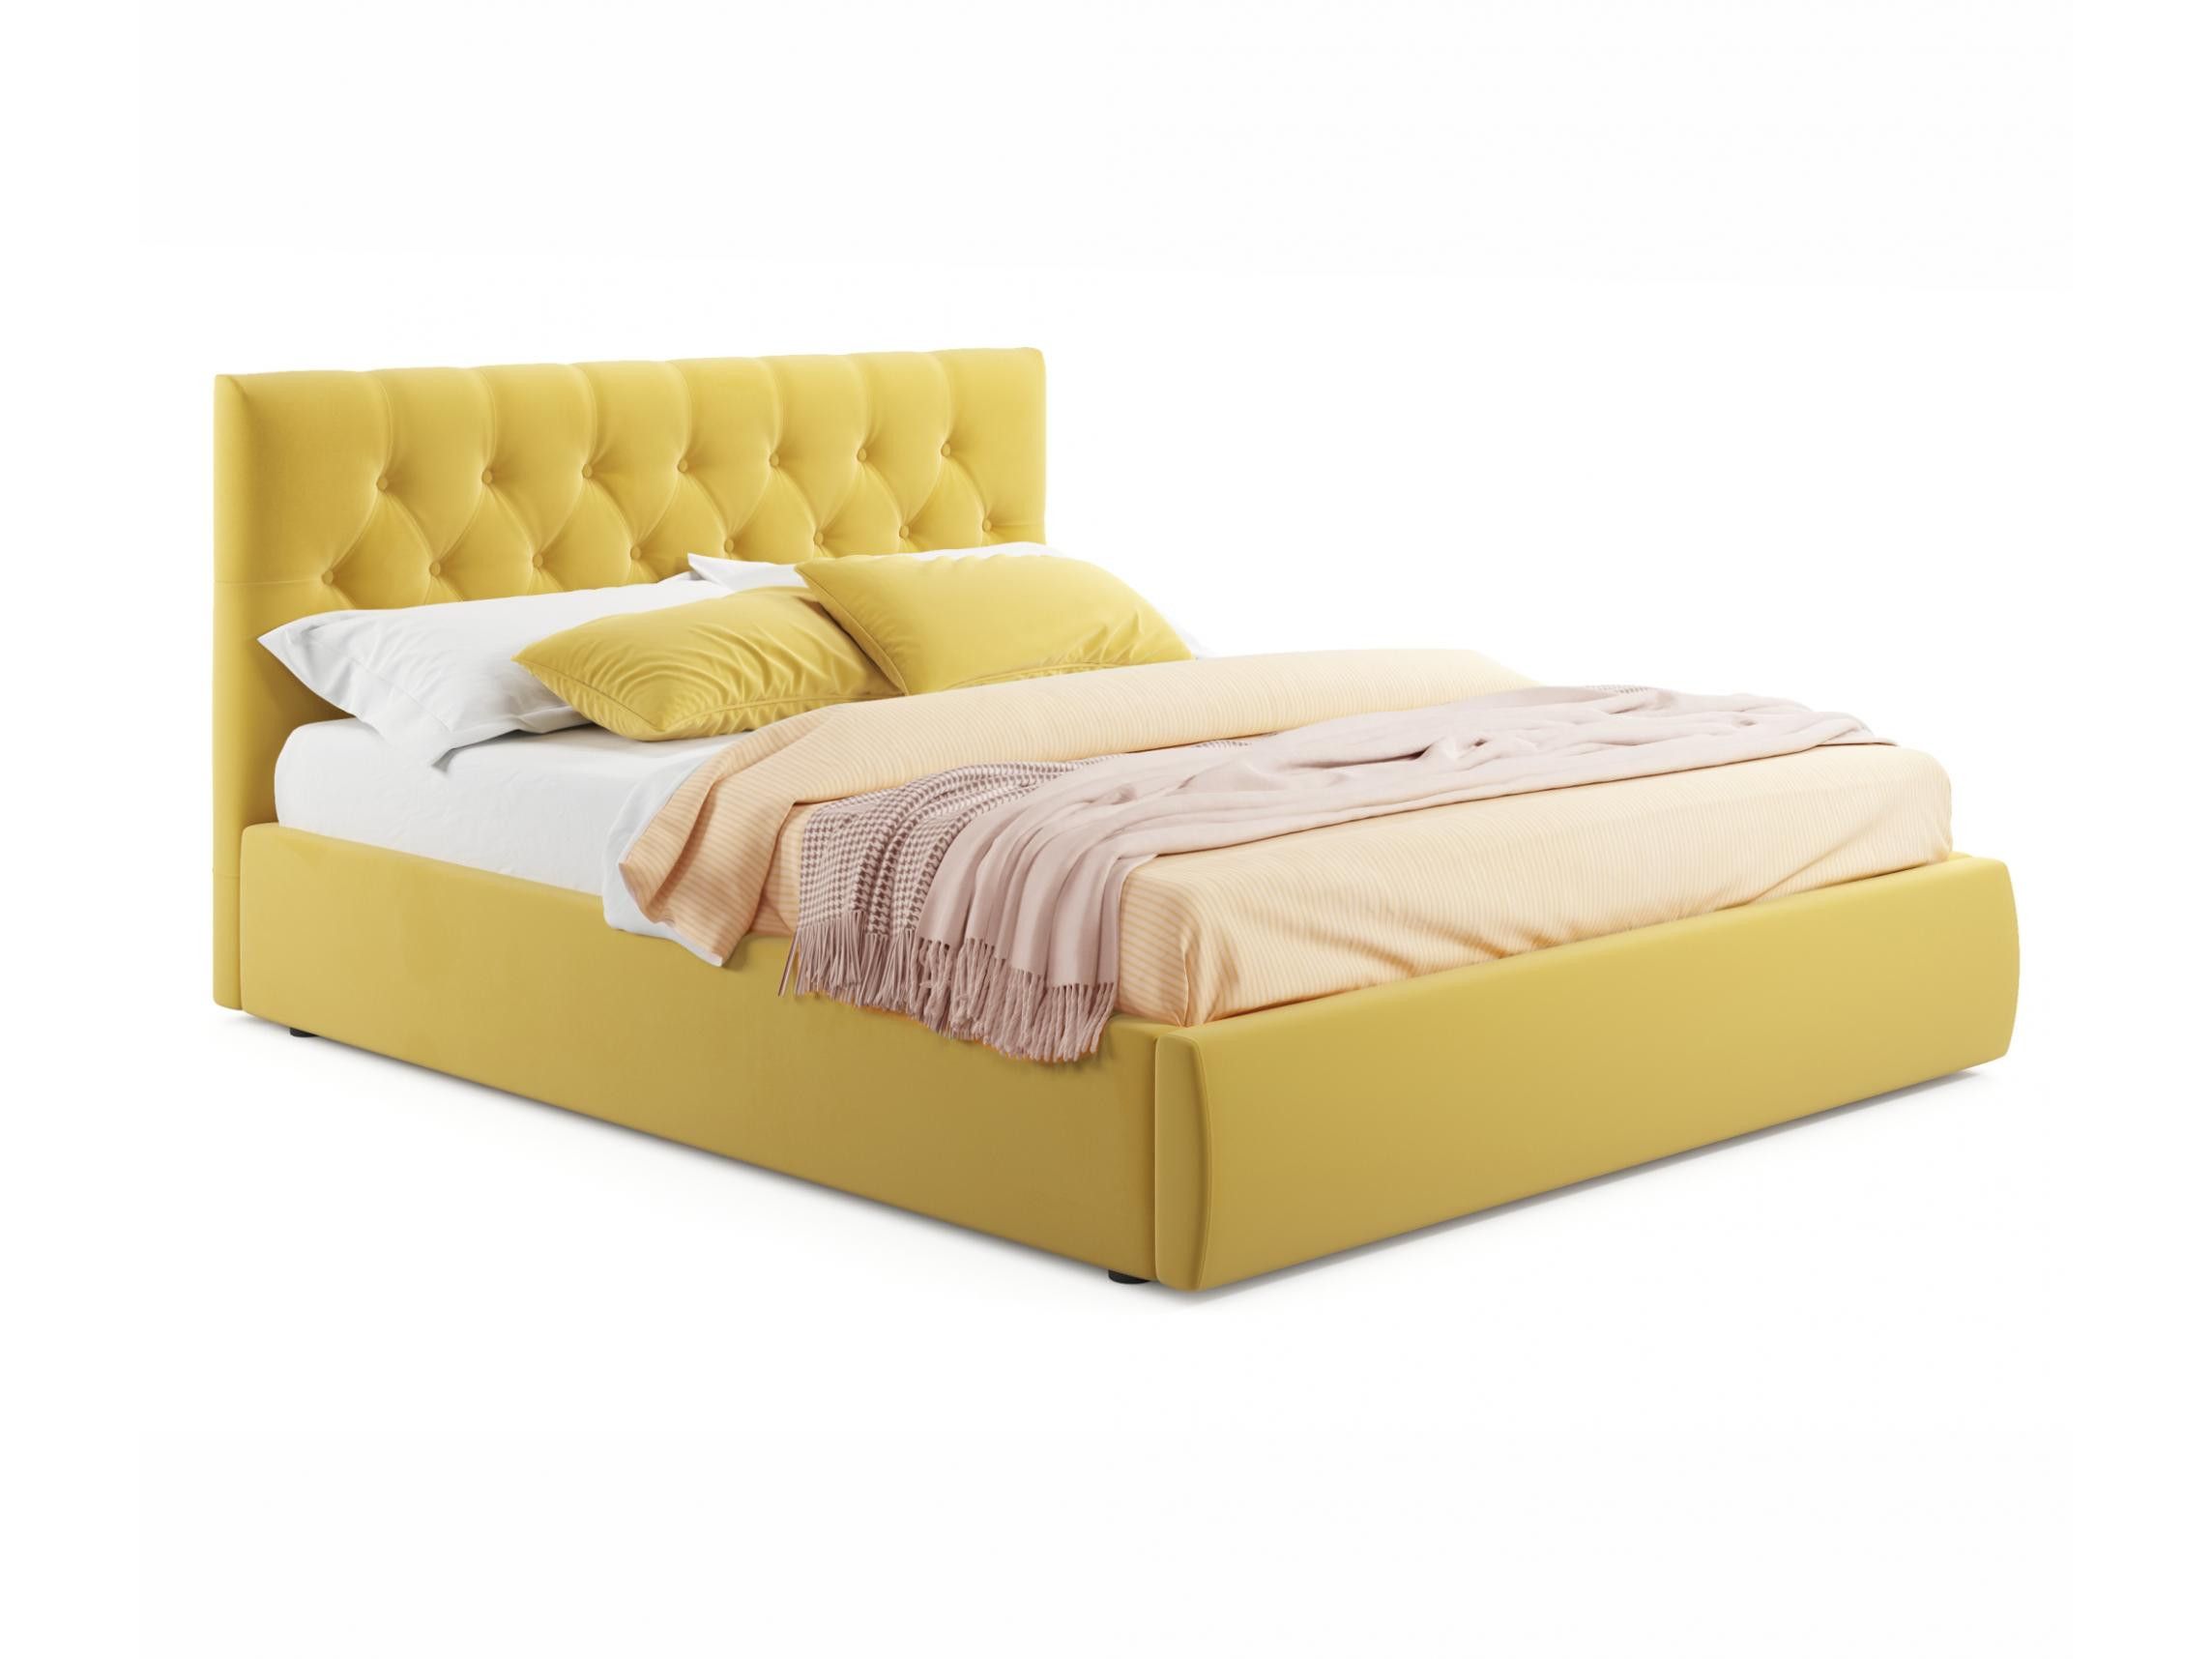 Мягкая кровать Verona 1400 желтая с ортопедическим основанием желтый, Желтый, Велюр, ДСП мягкая кровать verona 1600 желтая с ортопедическим основанием желтый желтый велюр дсп